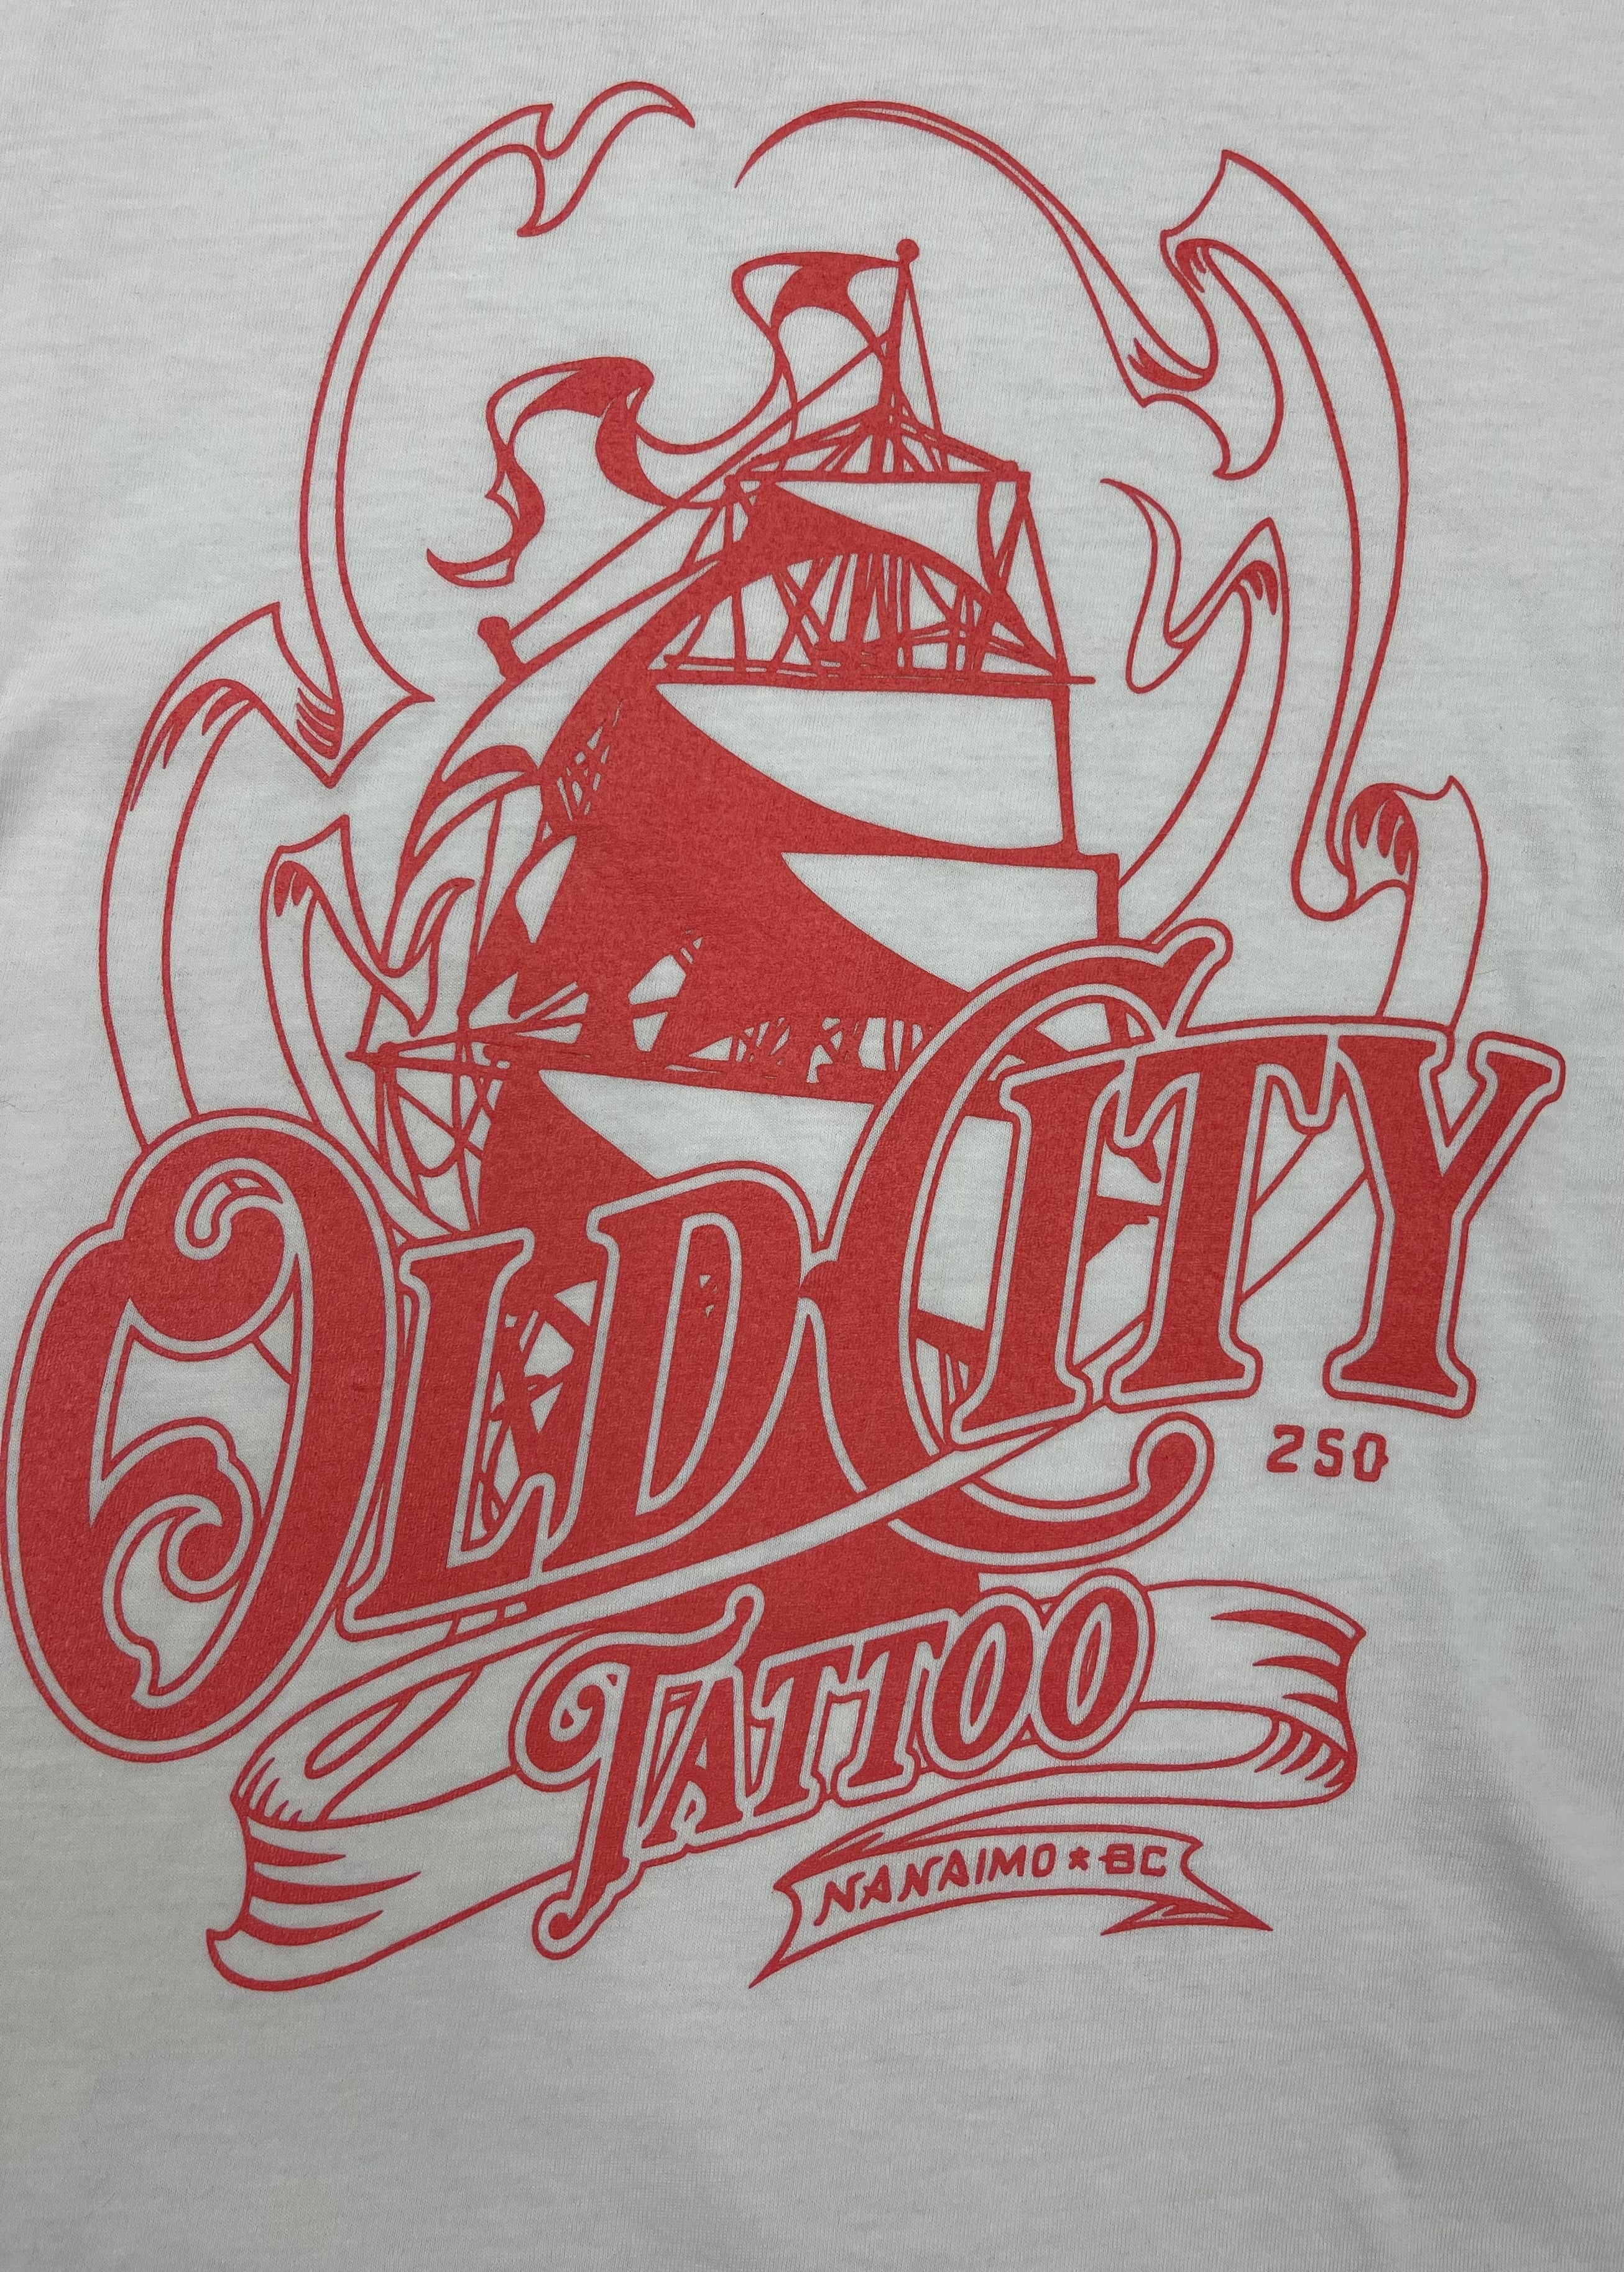 Old City Tattoo T-shirt